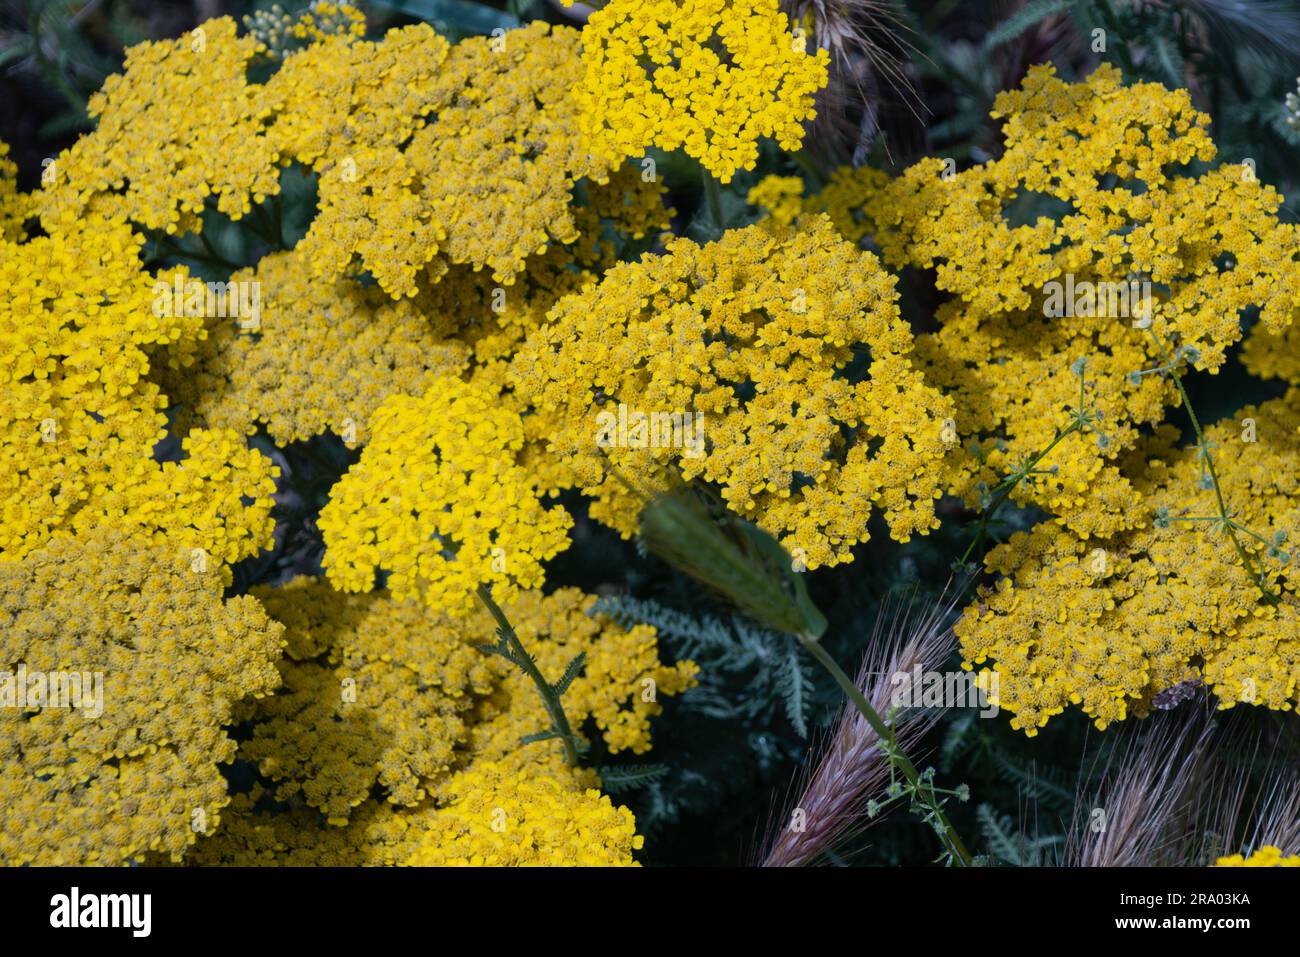 Achillea' filipendulina 'Parker's Variety' gelbe Blüten, auch bekannt als Schafgarbe 'Parker's Variety' Gelber Fernblattgarbe in Blüte Stockfoto